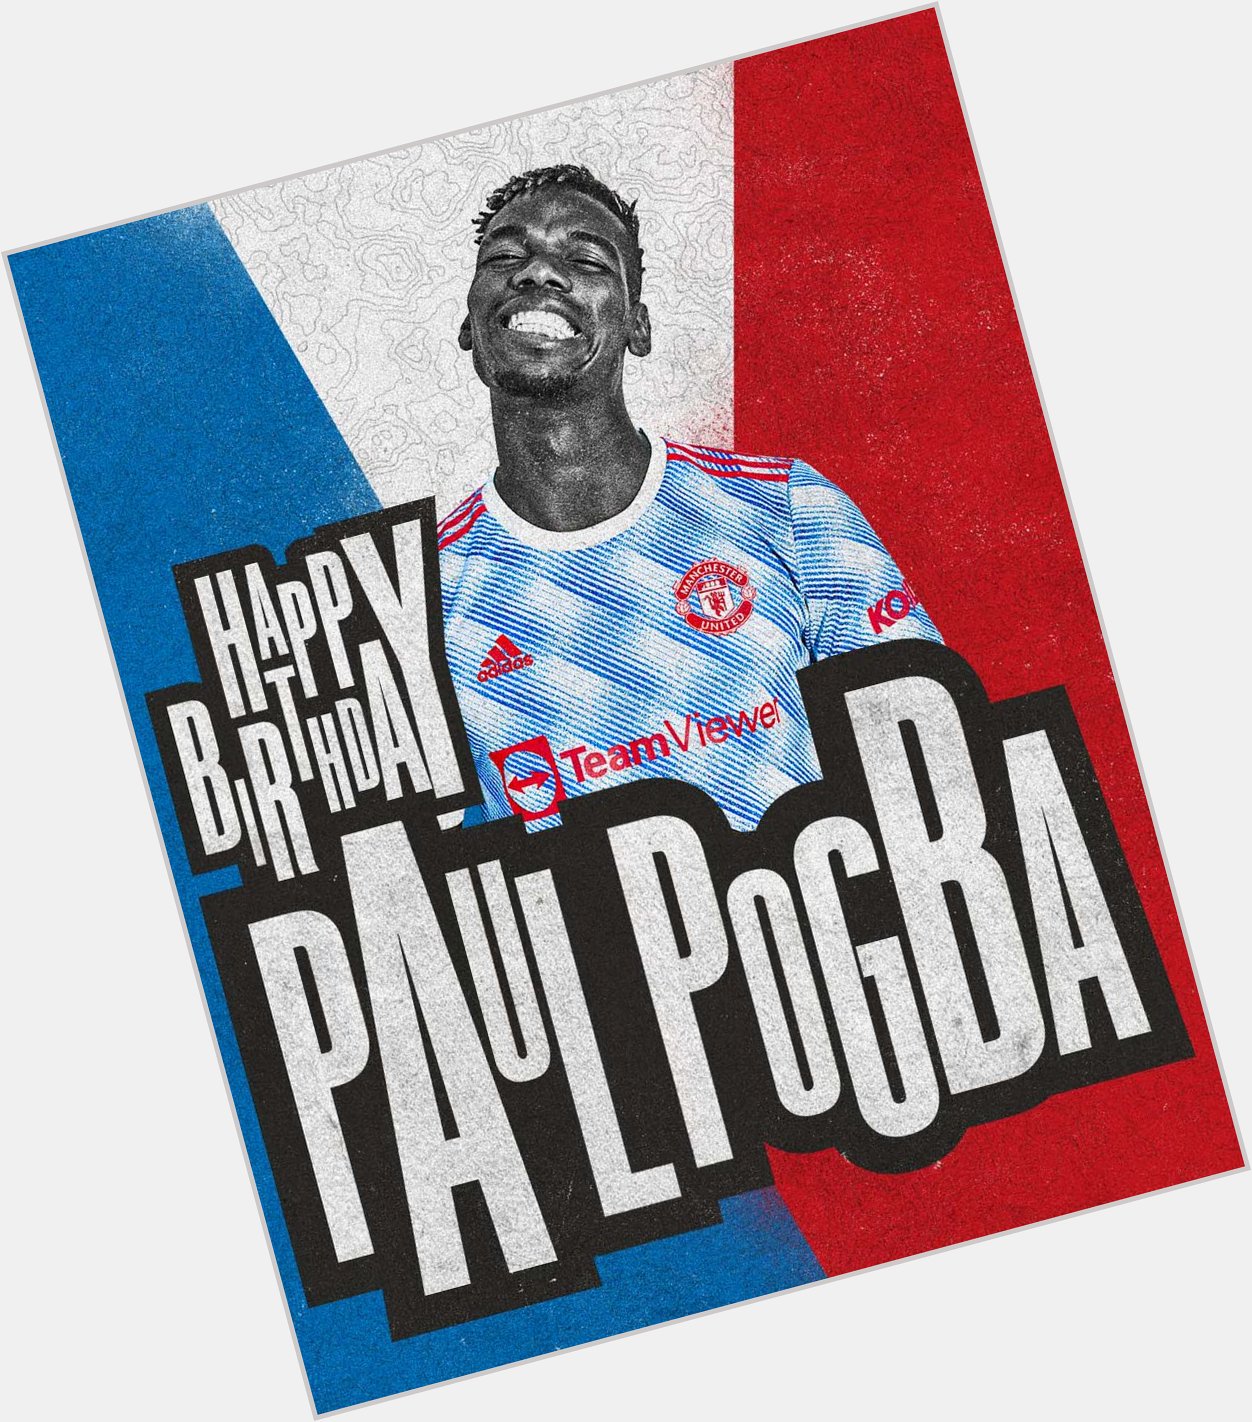 Happy birthday Paul Pogba the pass maestro!!!!! 